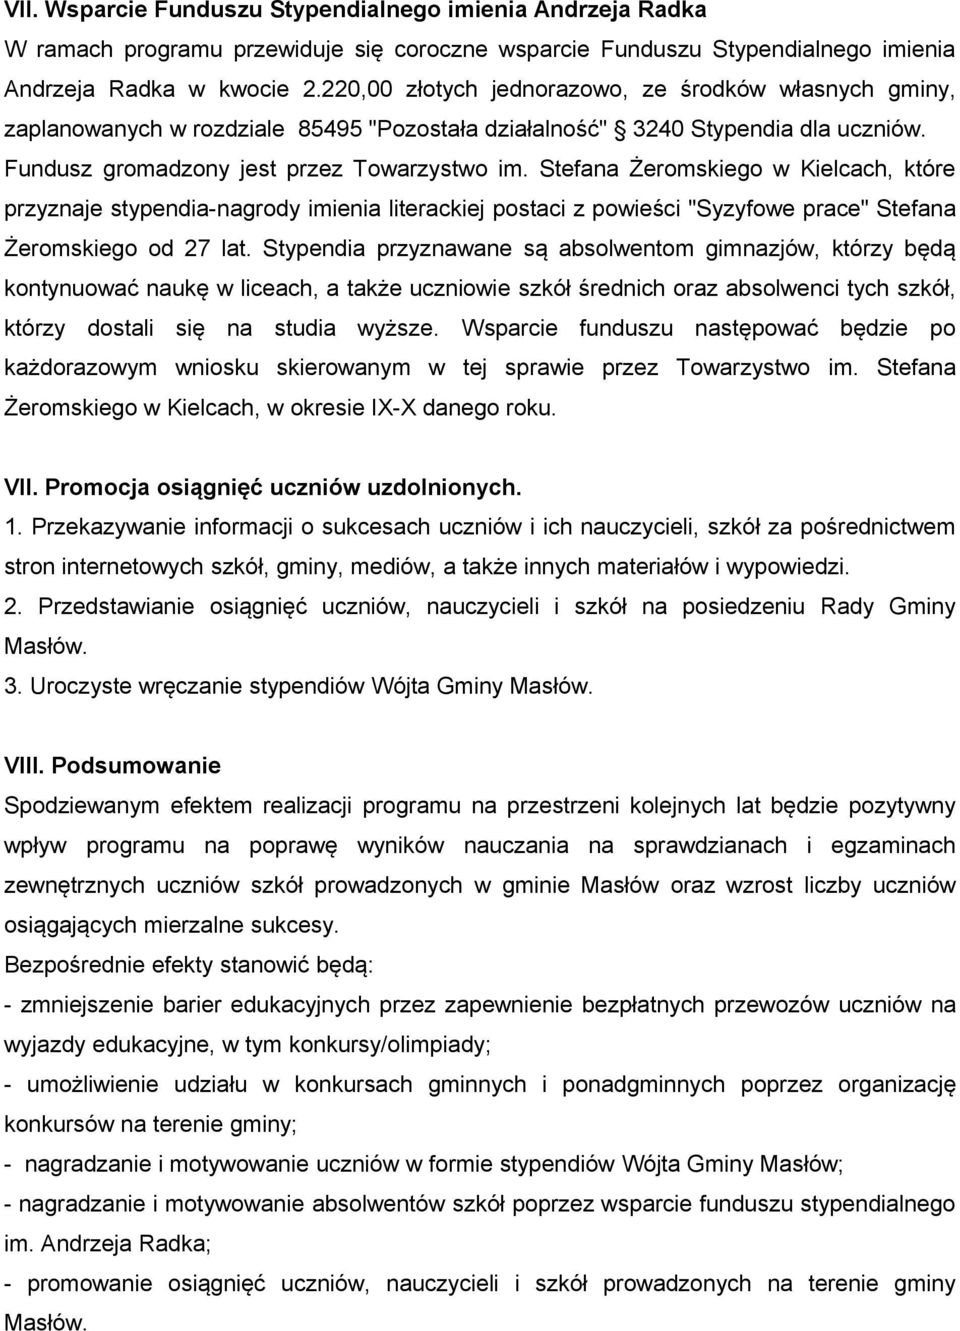 Stefana Żeromskiego w Kielcach, które przyznaje stypendia-nagrody imienia literackiej postaci z powieści "Syzyfowe prace" Stefana Żeromskiego od 27 lat.